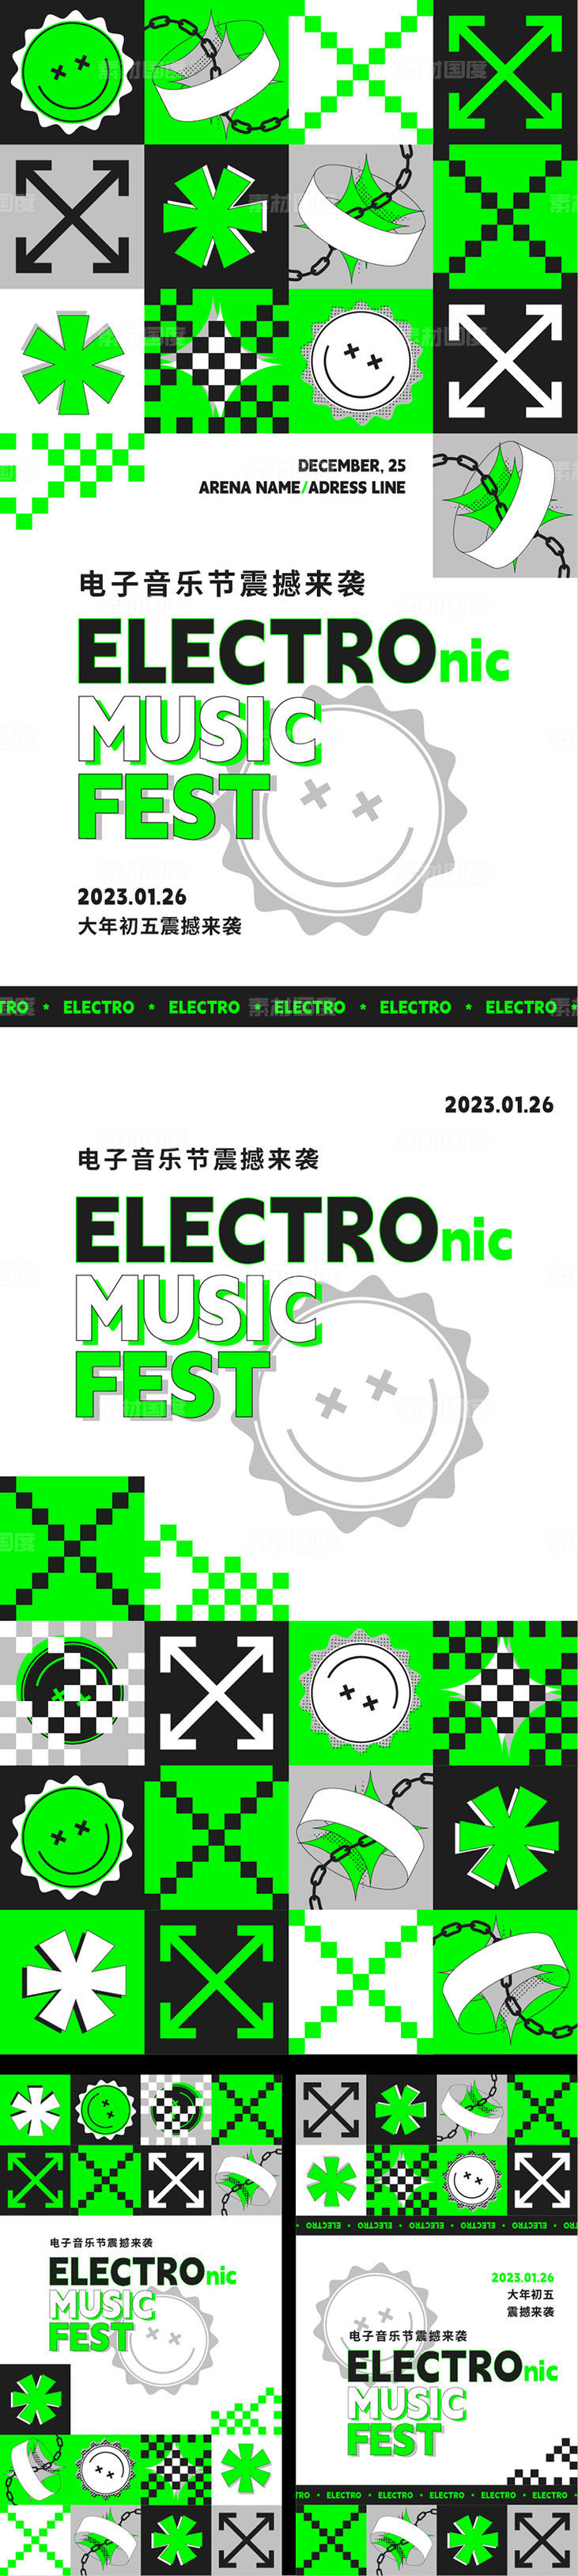 电子 音乐节 海报 延展 易拉宝 酸性设计 潮 演唱会